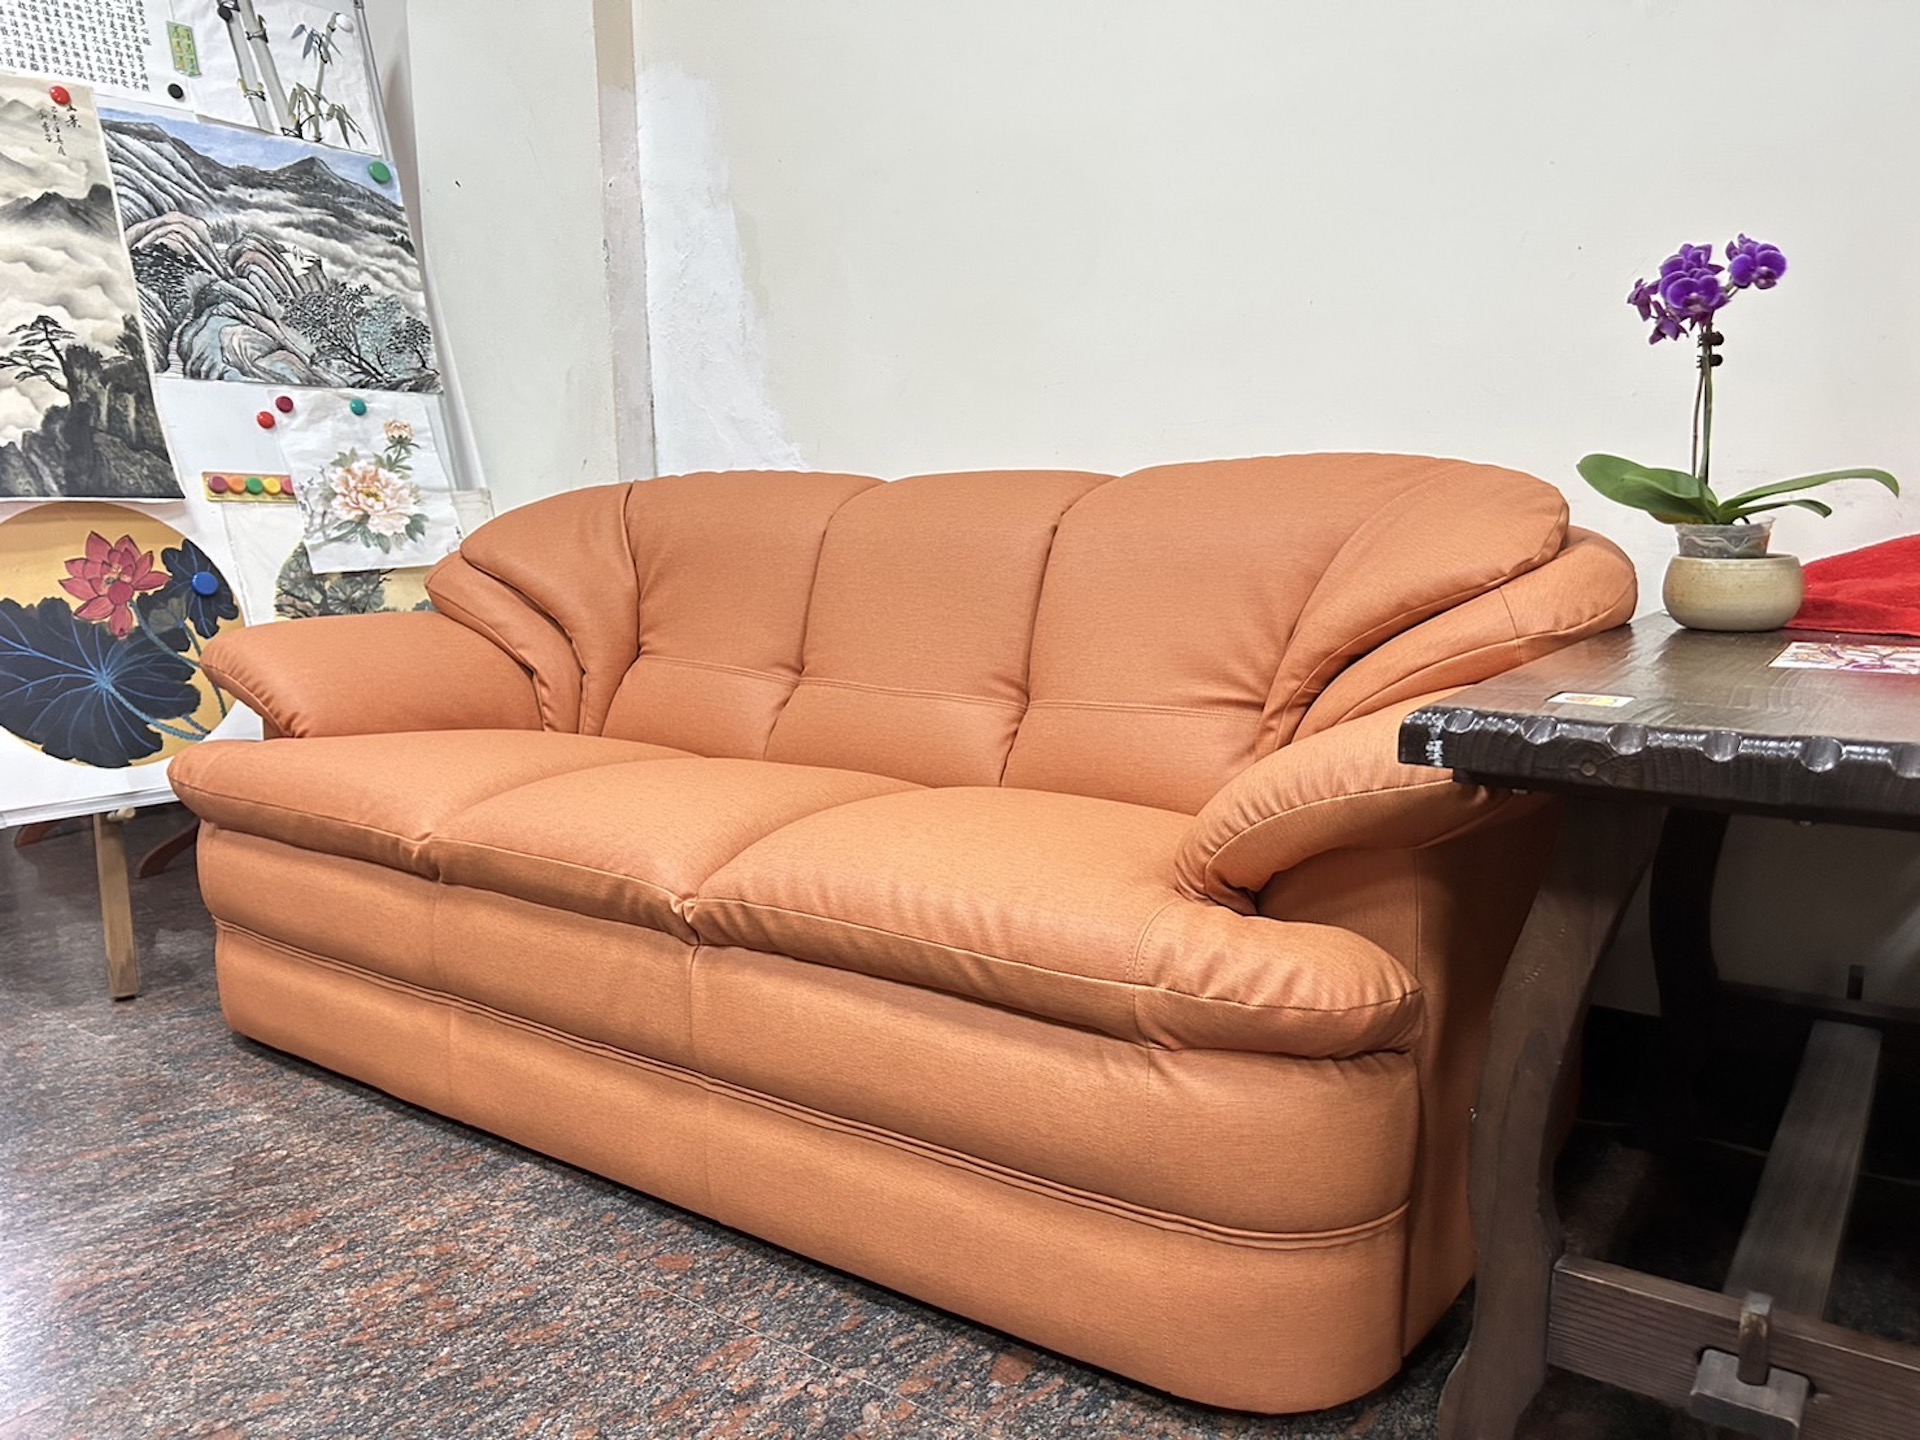 【客戶案例分享】台中東區三人沙發翻修換合成皮